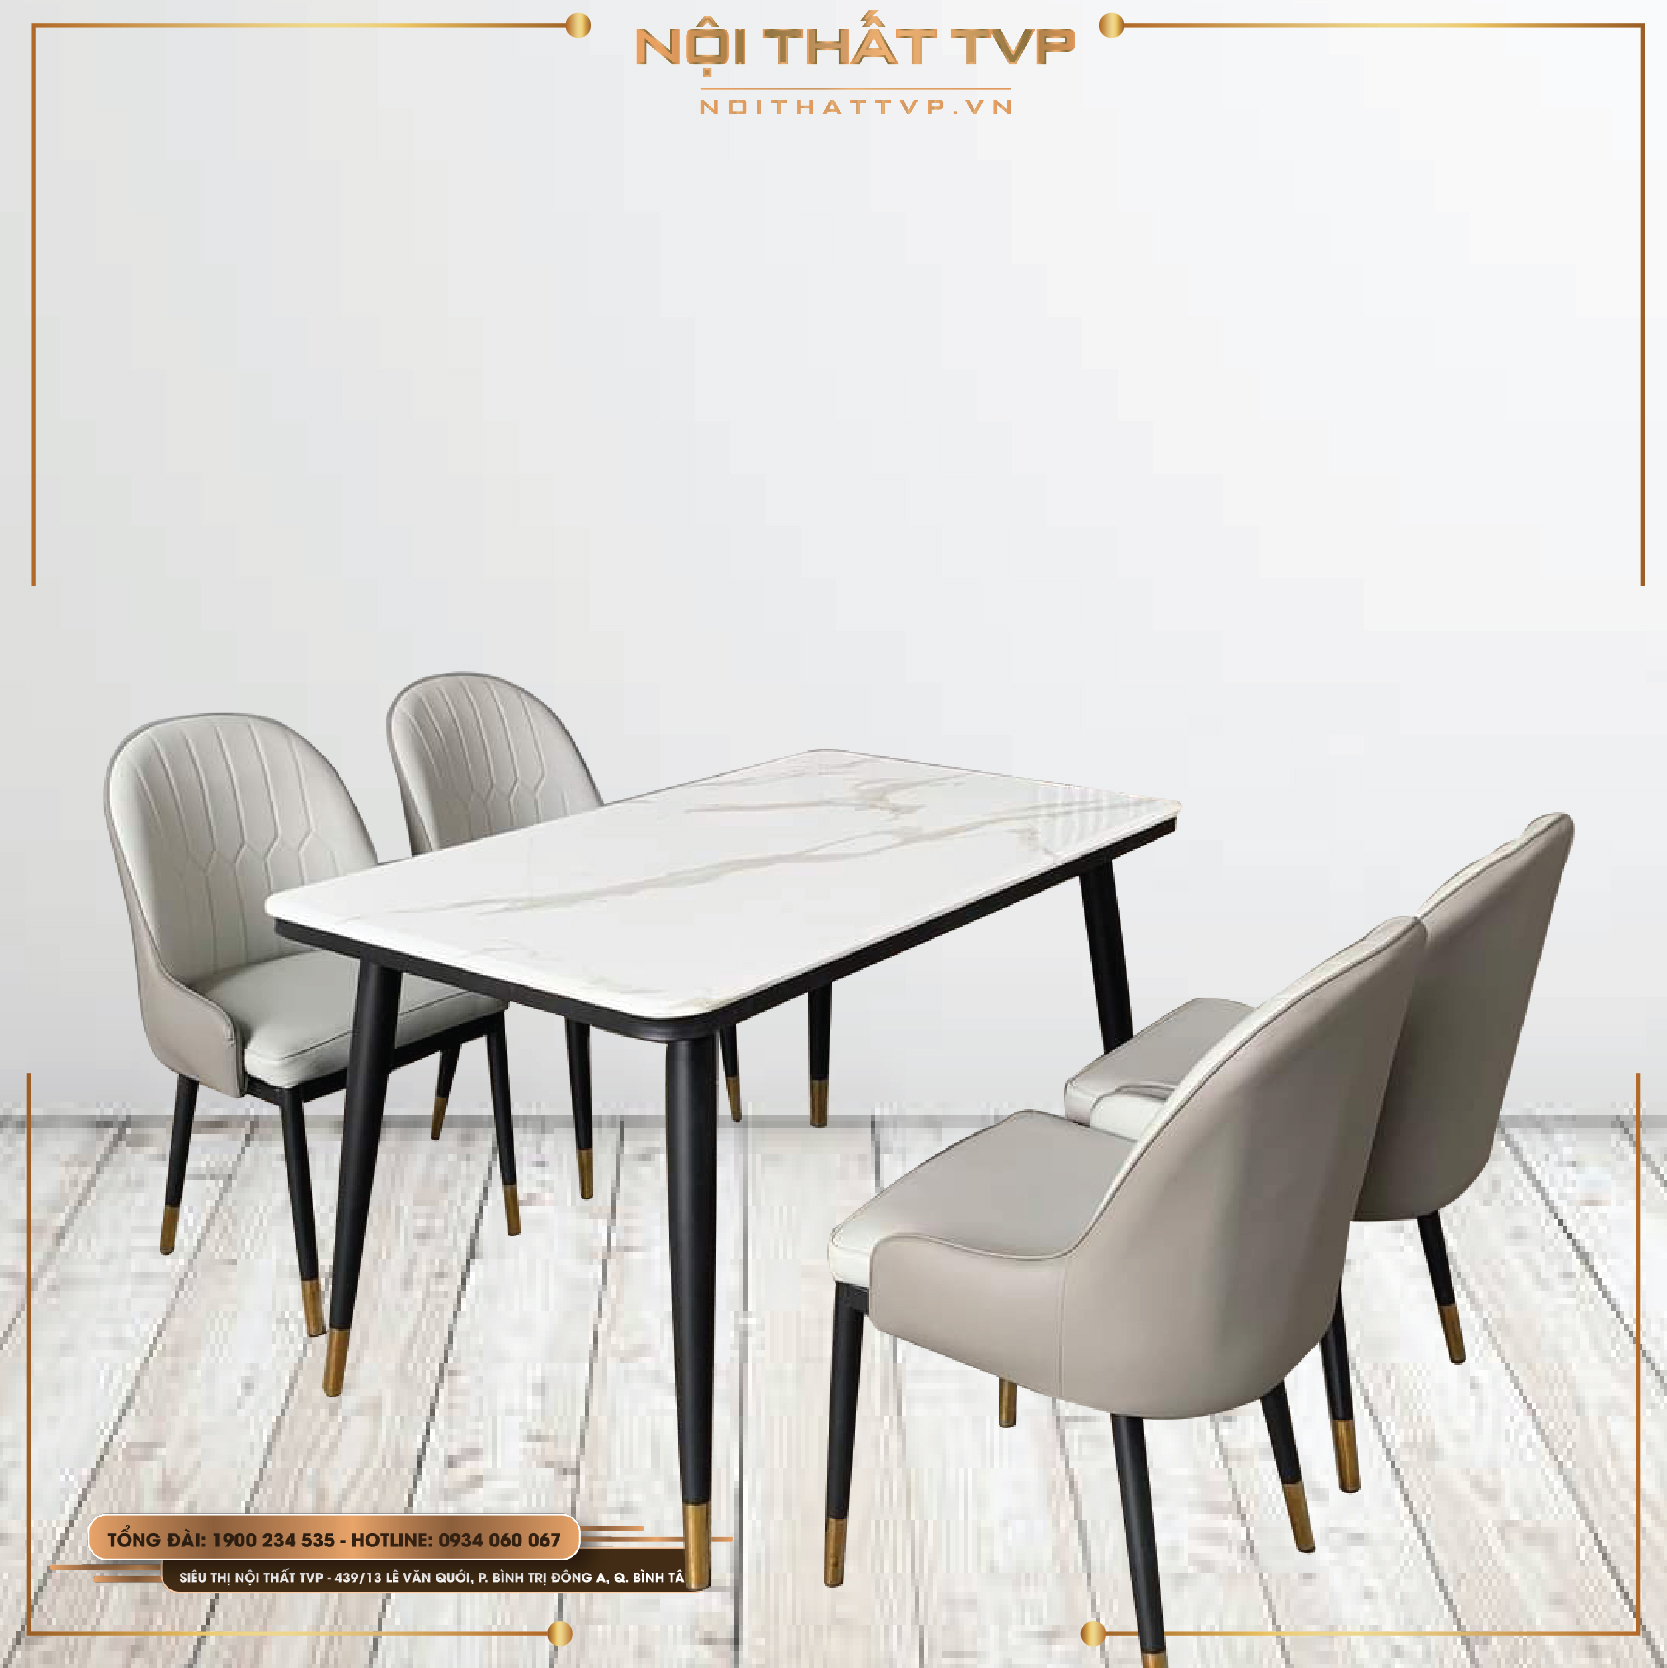 Bàn Ăn Ceramic - Mango ghế: Với sự kết hợp giữa bàn Ăn Ceramic và ghế Mango, bạn sẽ có một bộ bàn ăn đẹp mắt và phong cách. Năm 2024, bàn Ăn Ceramic và ghế Mango được sản xuất với nhiều màu sắc và kiểu dáng khác nhau, giúp bạn dễ dàng để tìm một bộ bàn ăn phù hợp với sở thích của mình. Xem hình ảnh để đón chào một căn phòng ăn mới và tuyệt vời hơn!